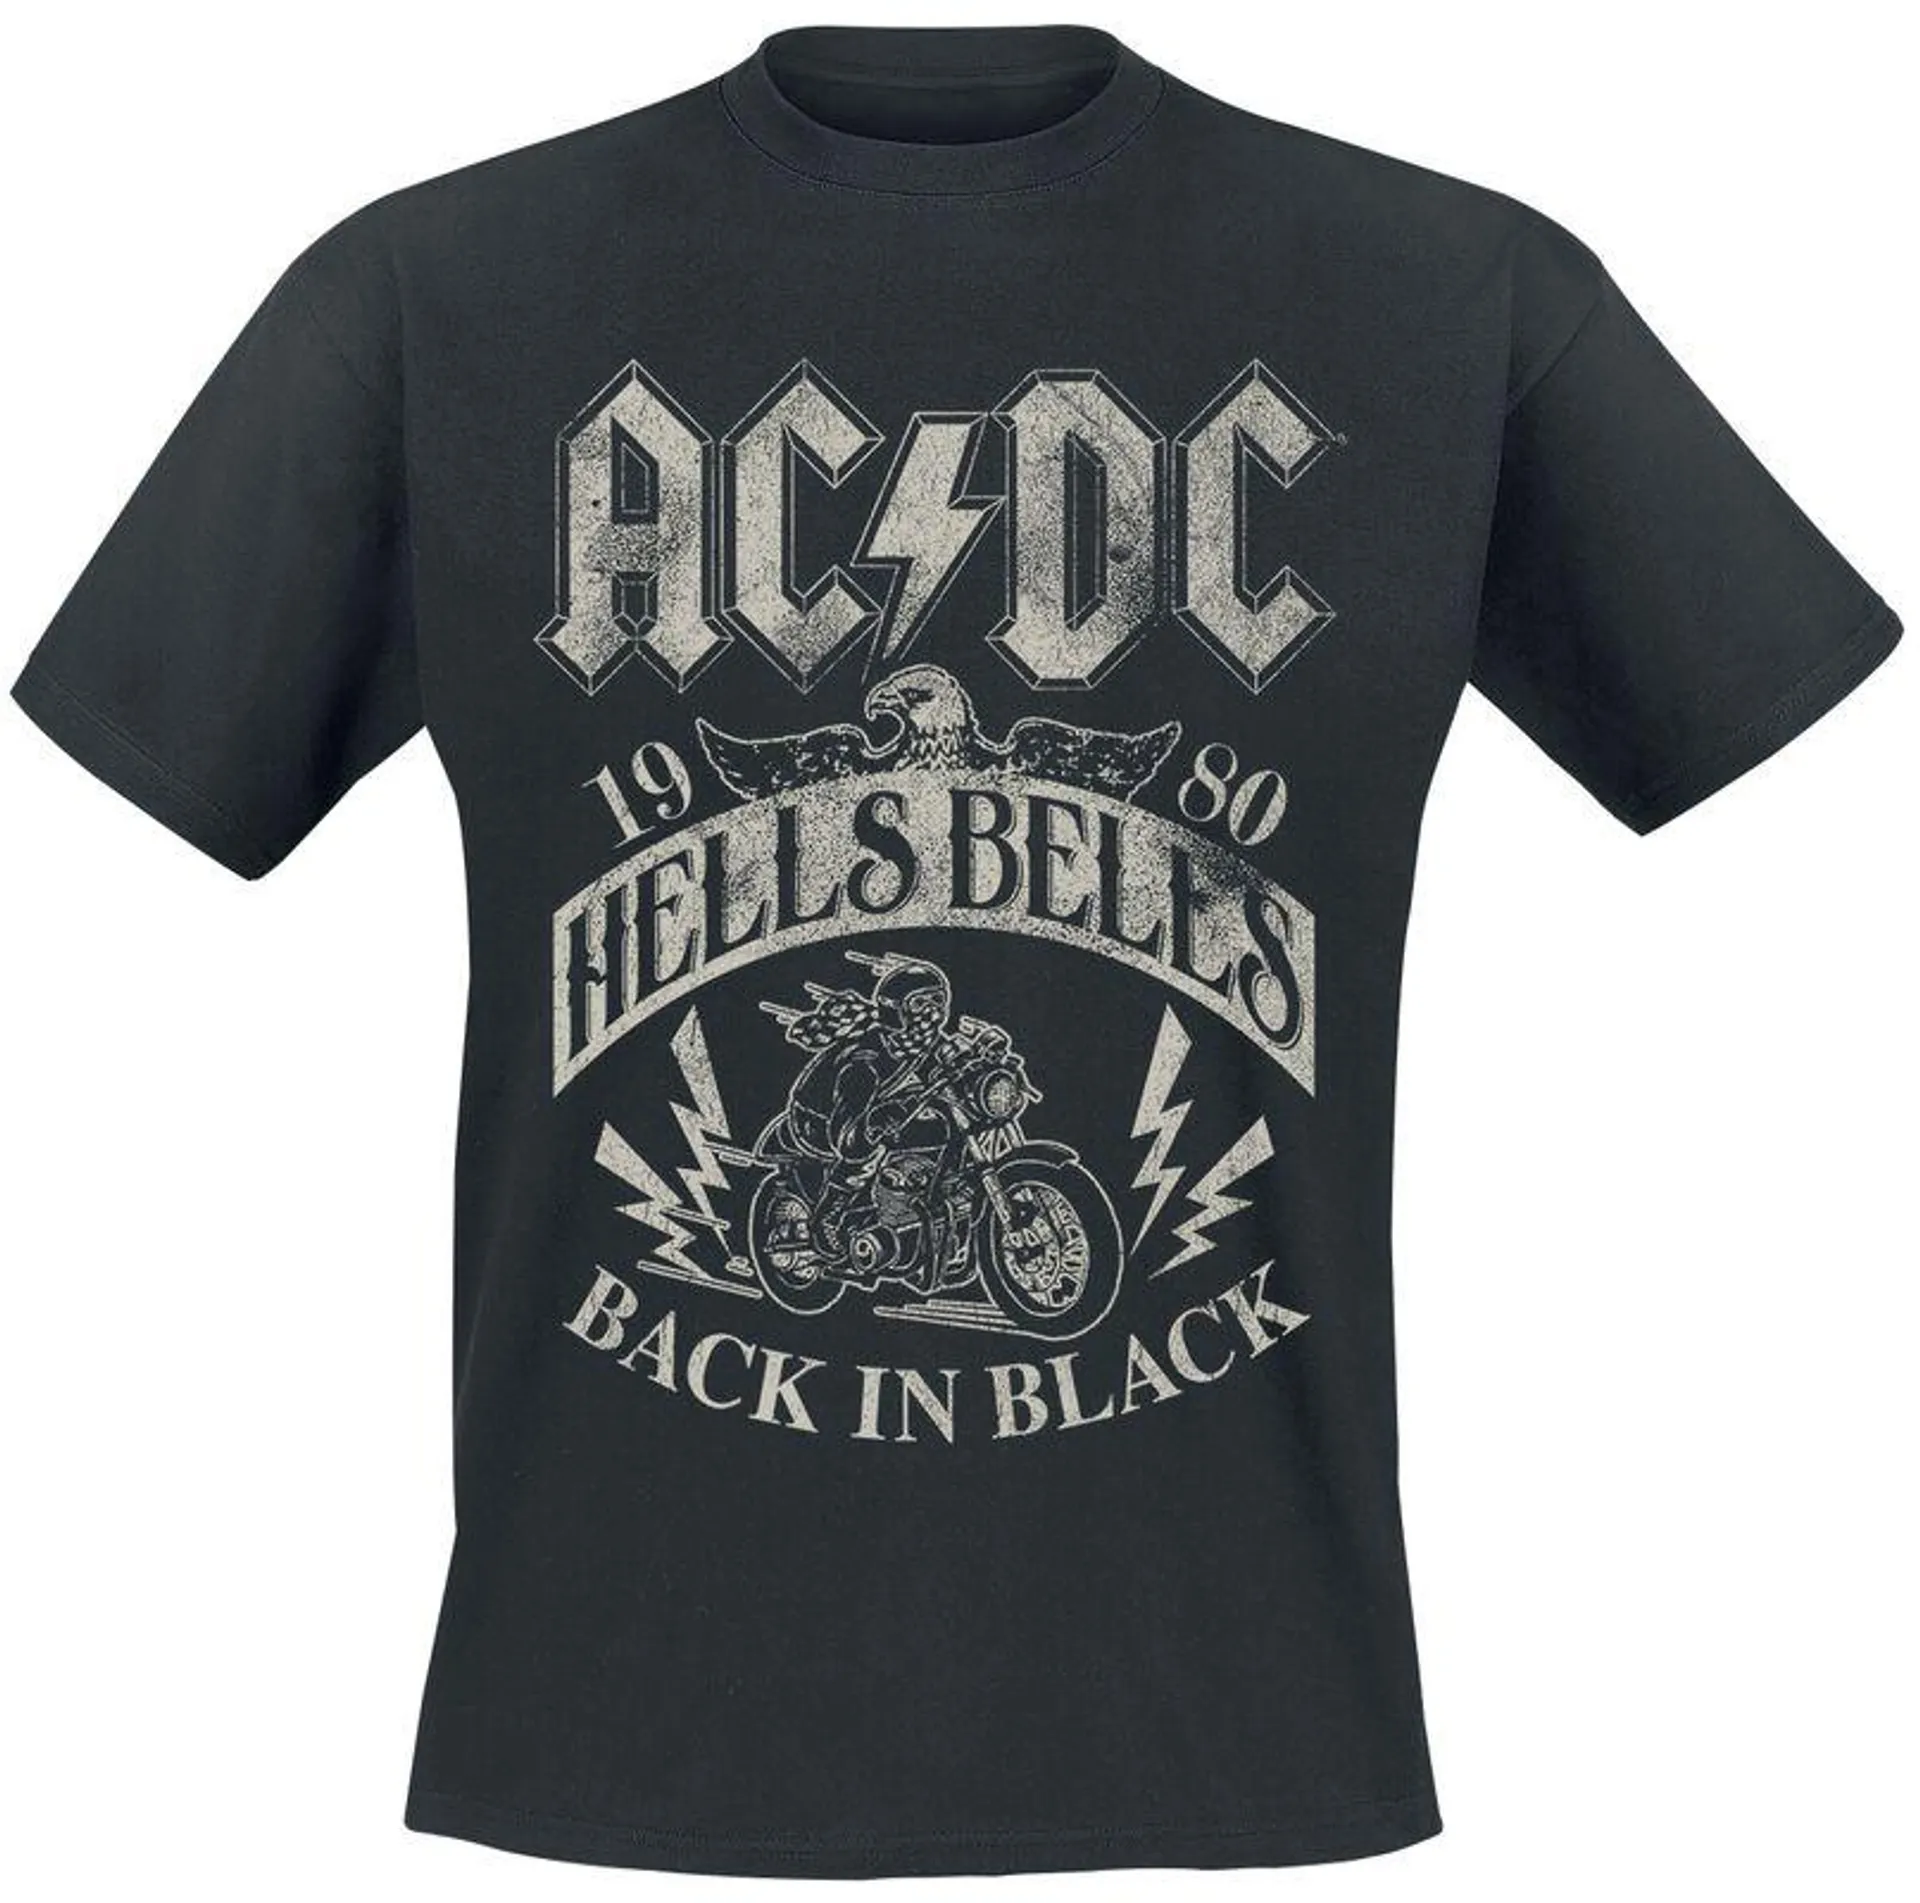 "Hells Bells 1980" Camiseta Negro de AC/DC